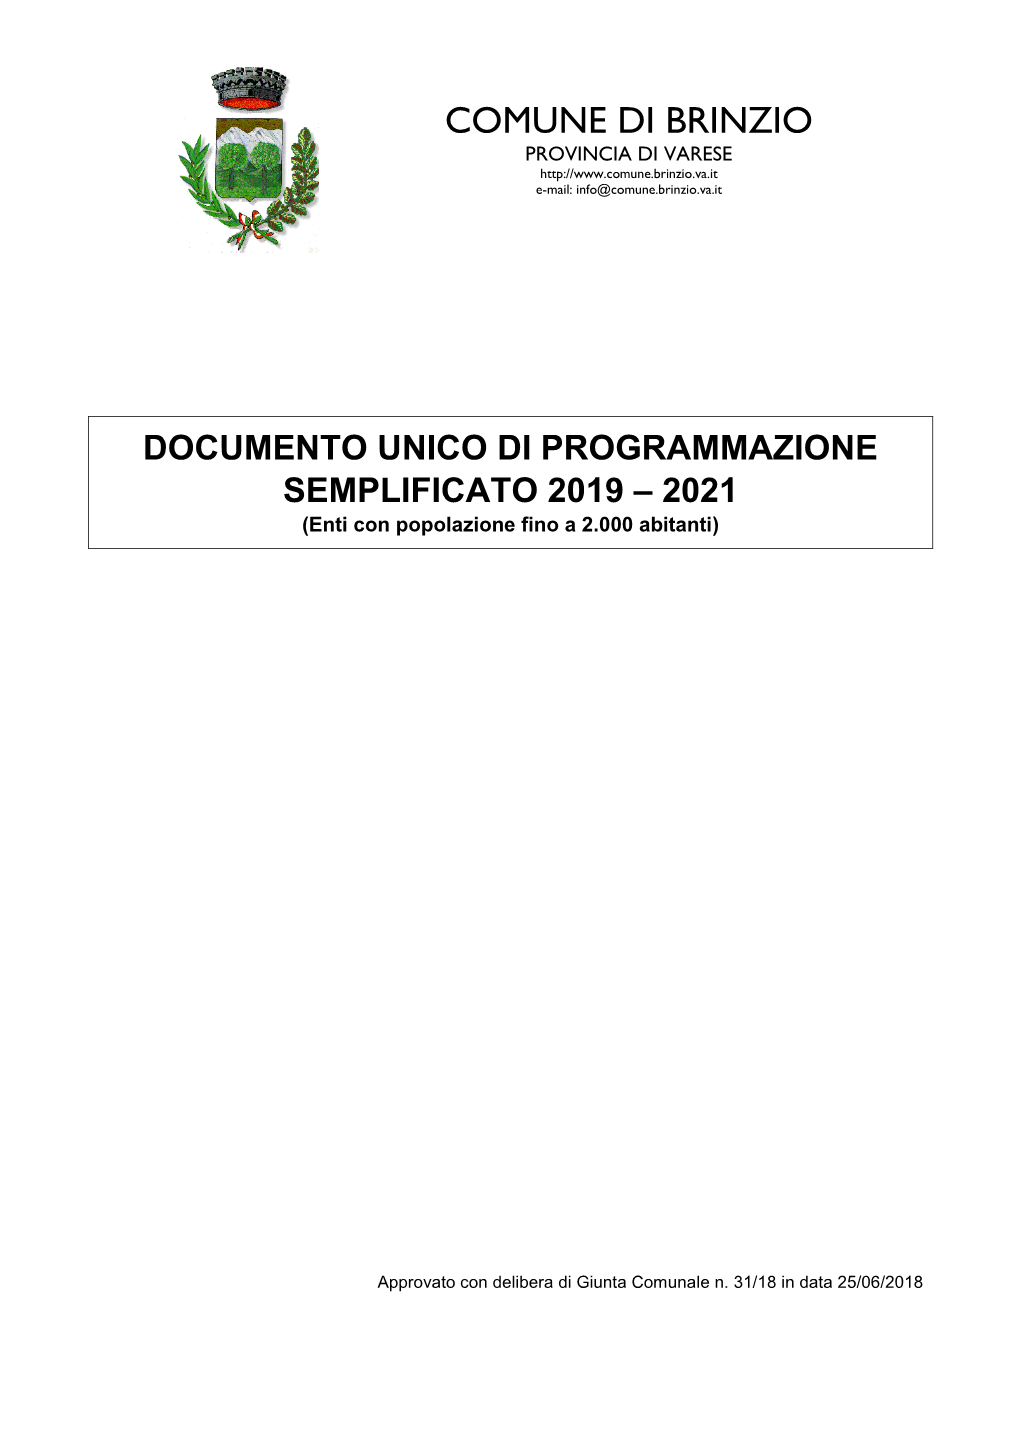 COMUNE DI BRINZIO PROVINCIA DI VARESE E-Mail: Info@Comune.Brinzio.Va.It